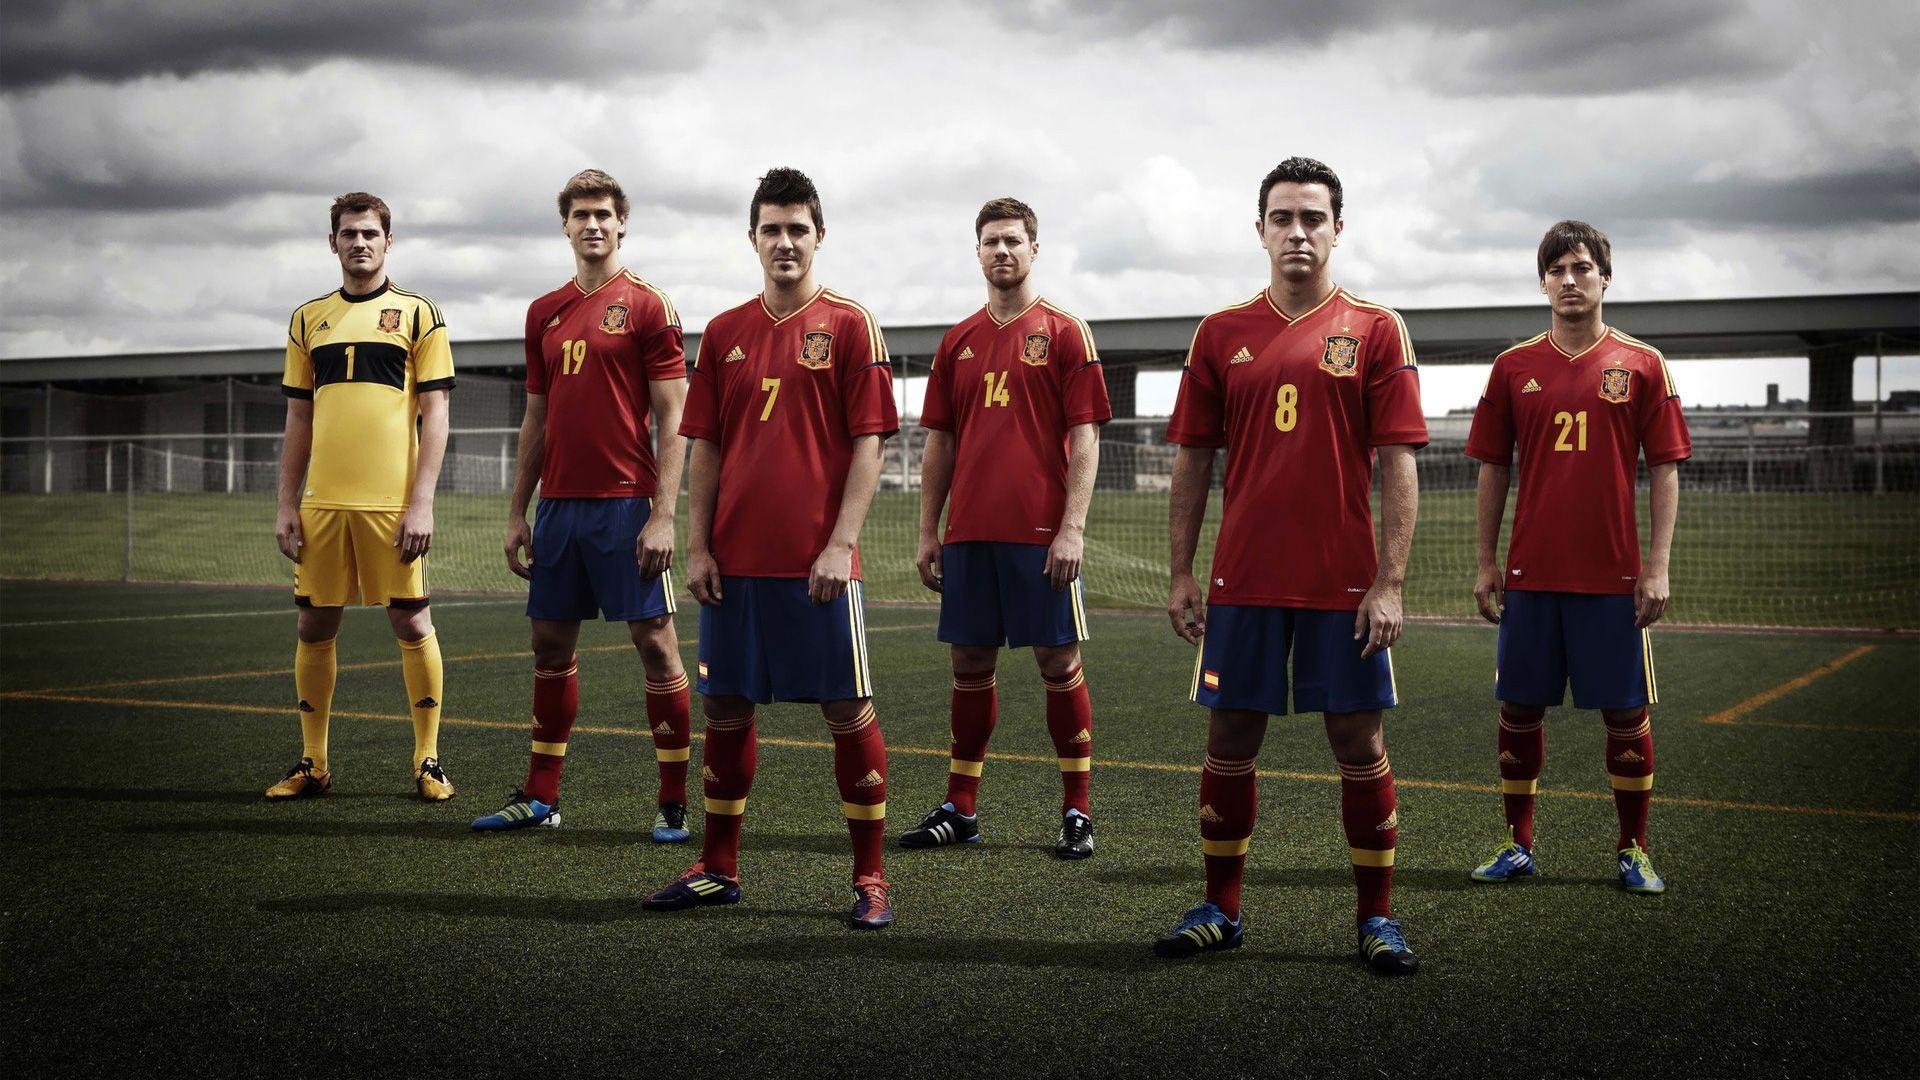 Spain Football Team wallpaper. FootBall